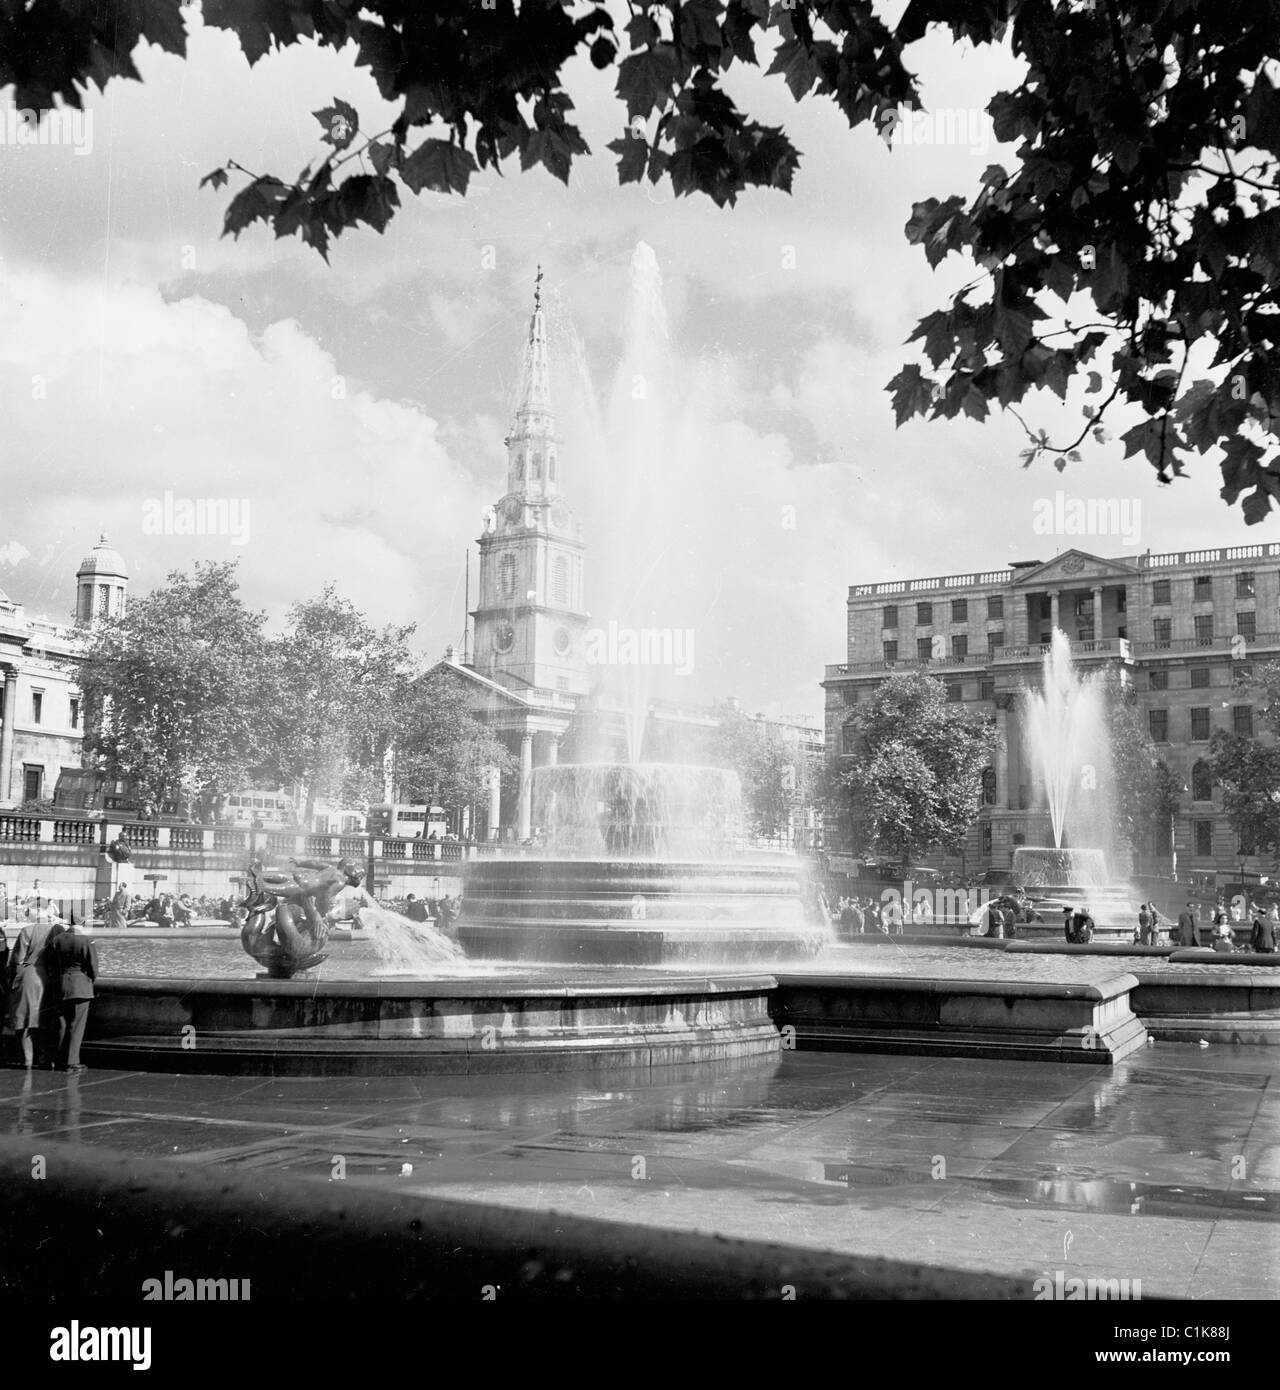 Années 1950, les deux fontaines de Trafalgar Square, Londres, conçues par Sir Edwin Lutyens comme mémoriaux aux de Lords Jellicoe et Beaty, remplaçant les plus anciennes. Banque D'Images